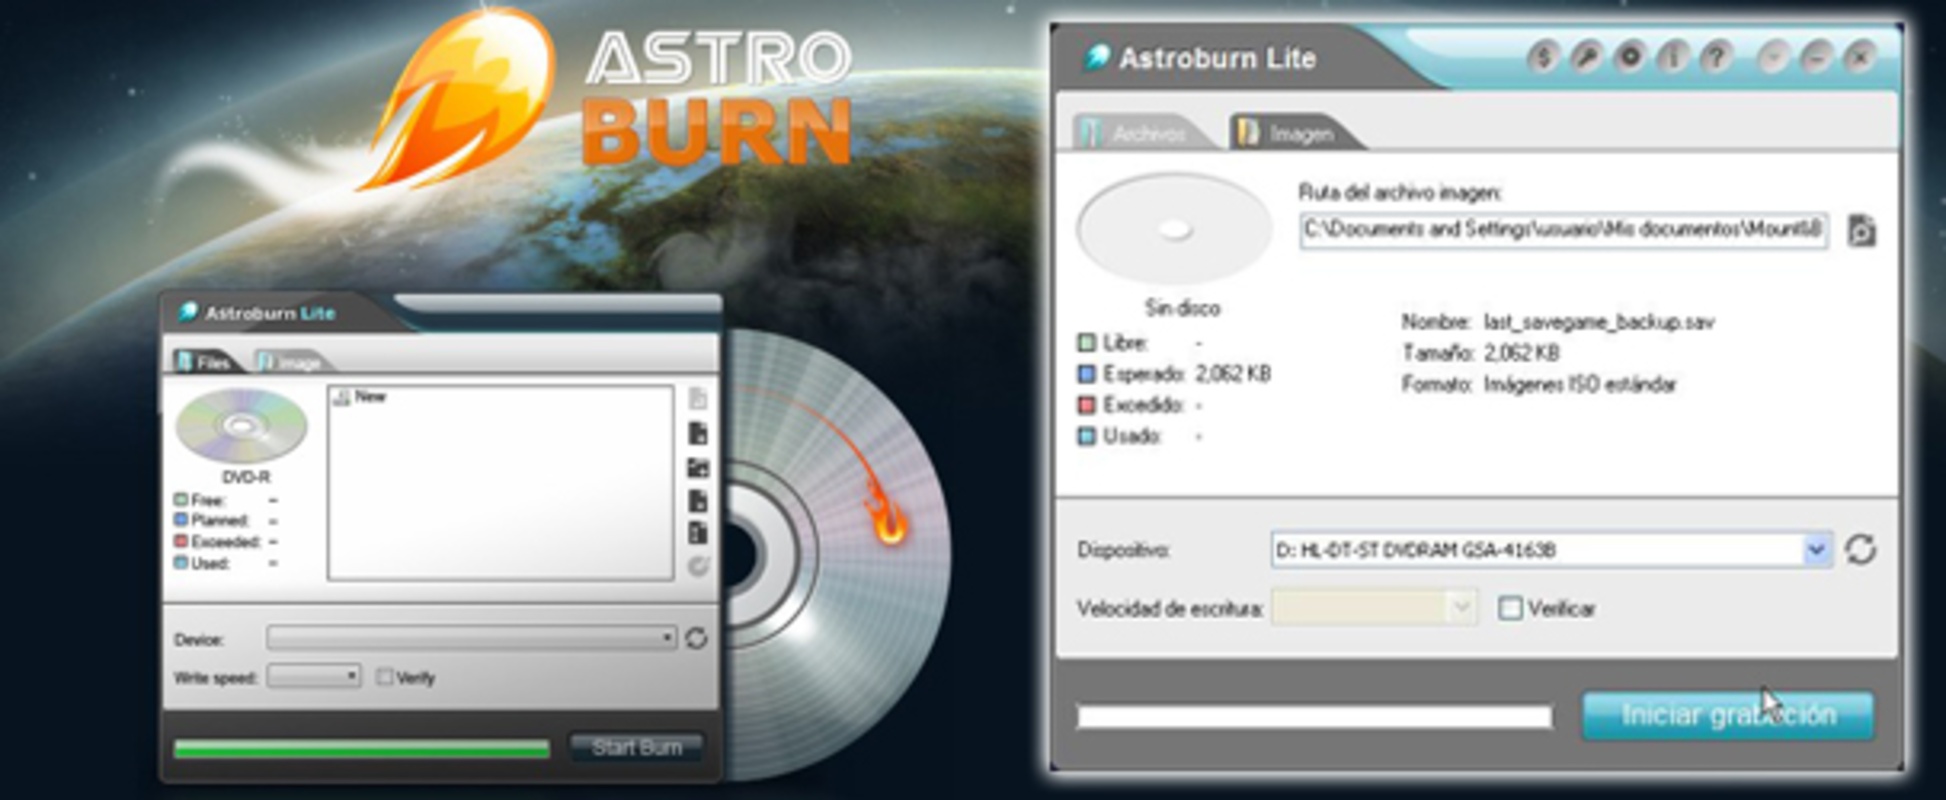 Astroburn Lite 2.0.0.205 feature